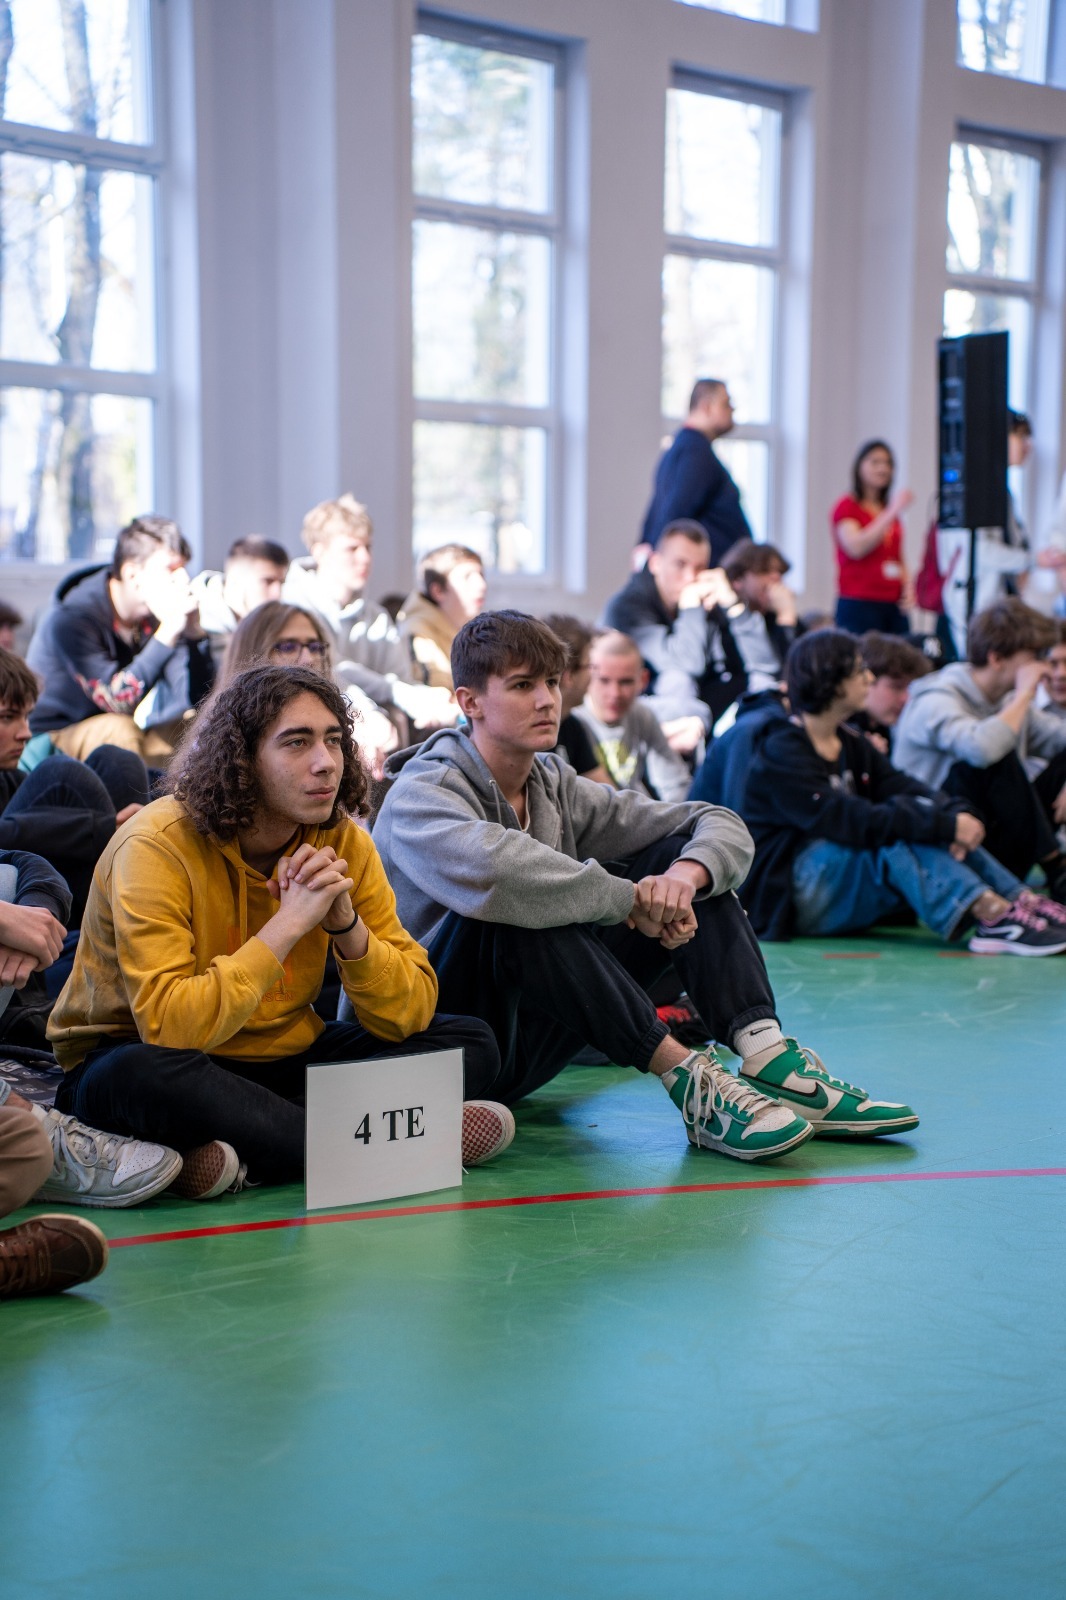 Uczniowie siedzący klasami na sali gimnastycznej w trakcie apelu. 